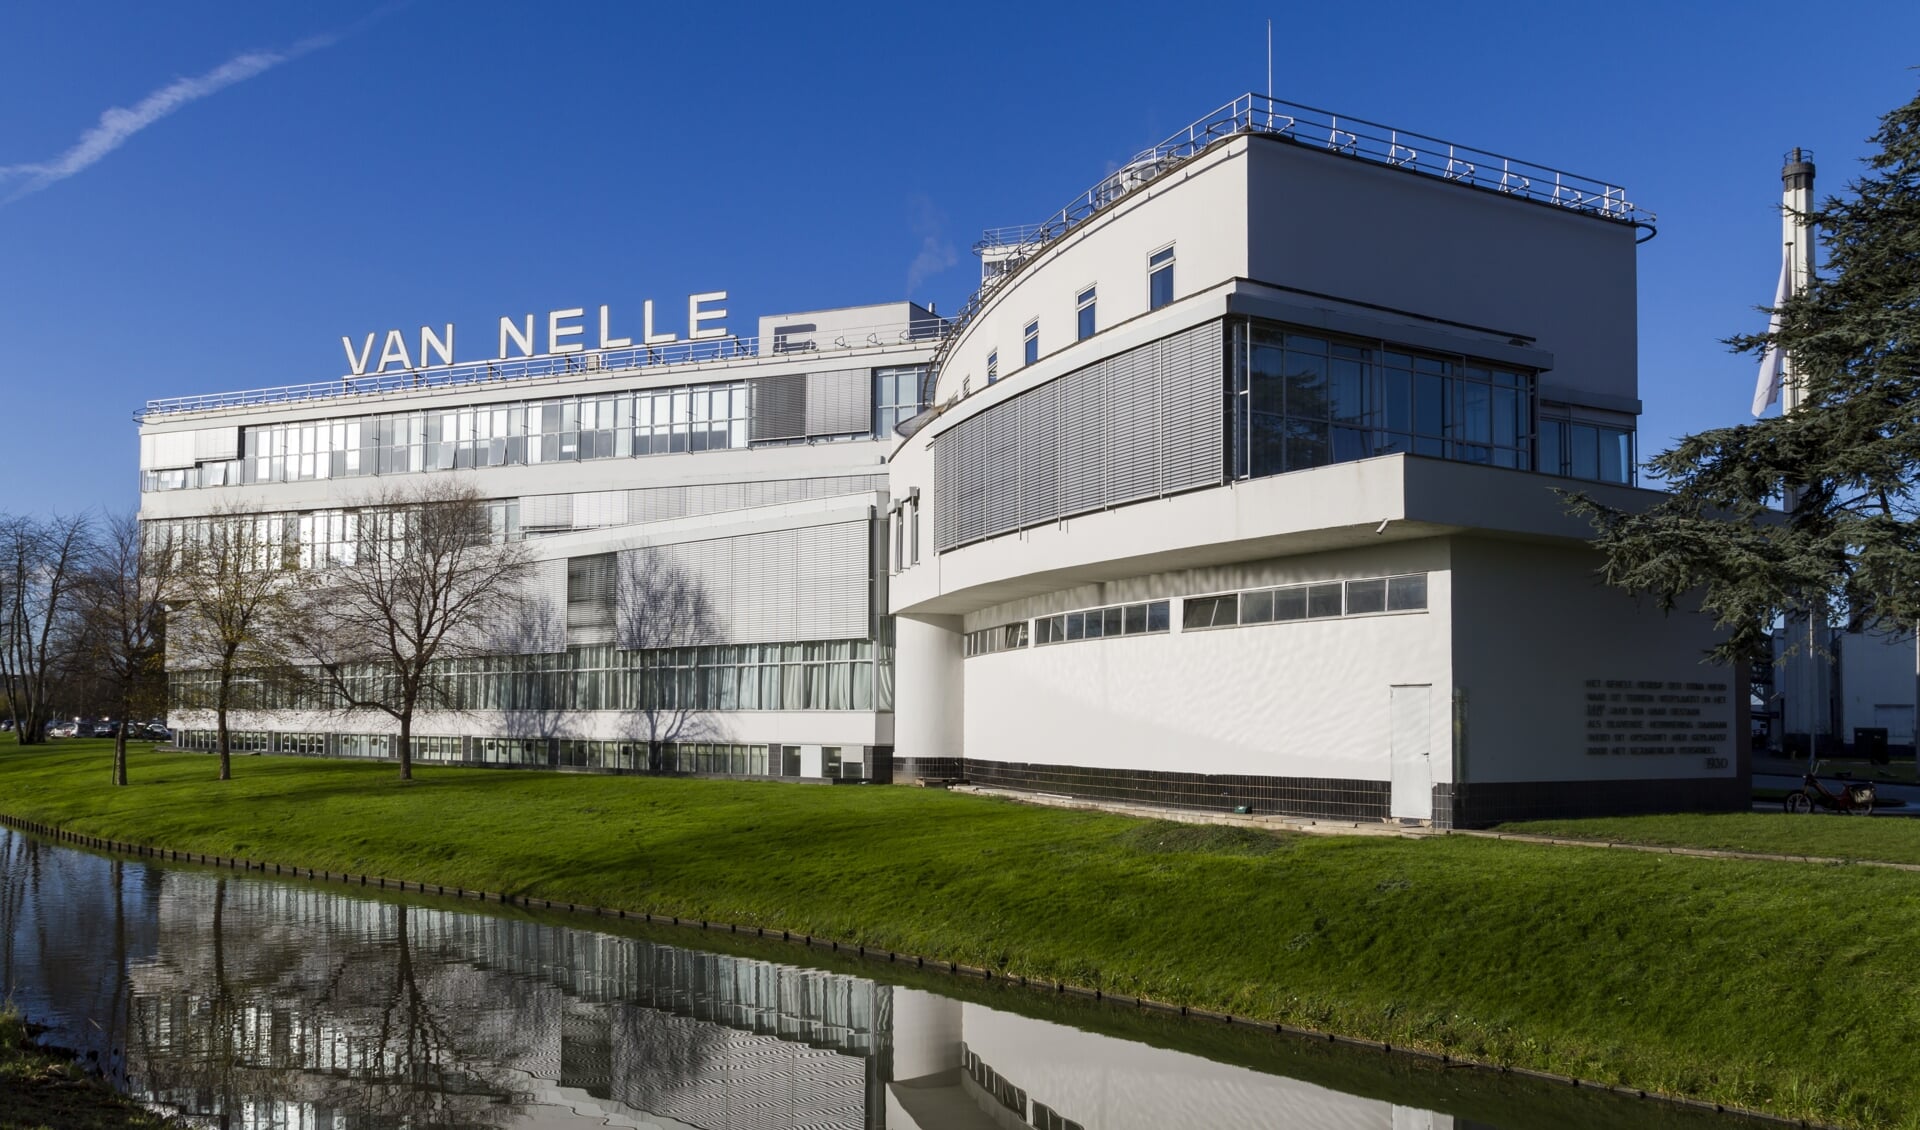 De Van Nellefabriek in Rotterdam staat op de lijst vanwege zijn unieke architectuur.